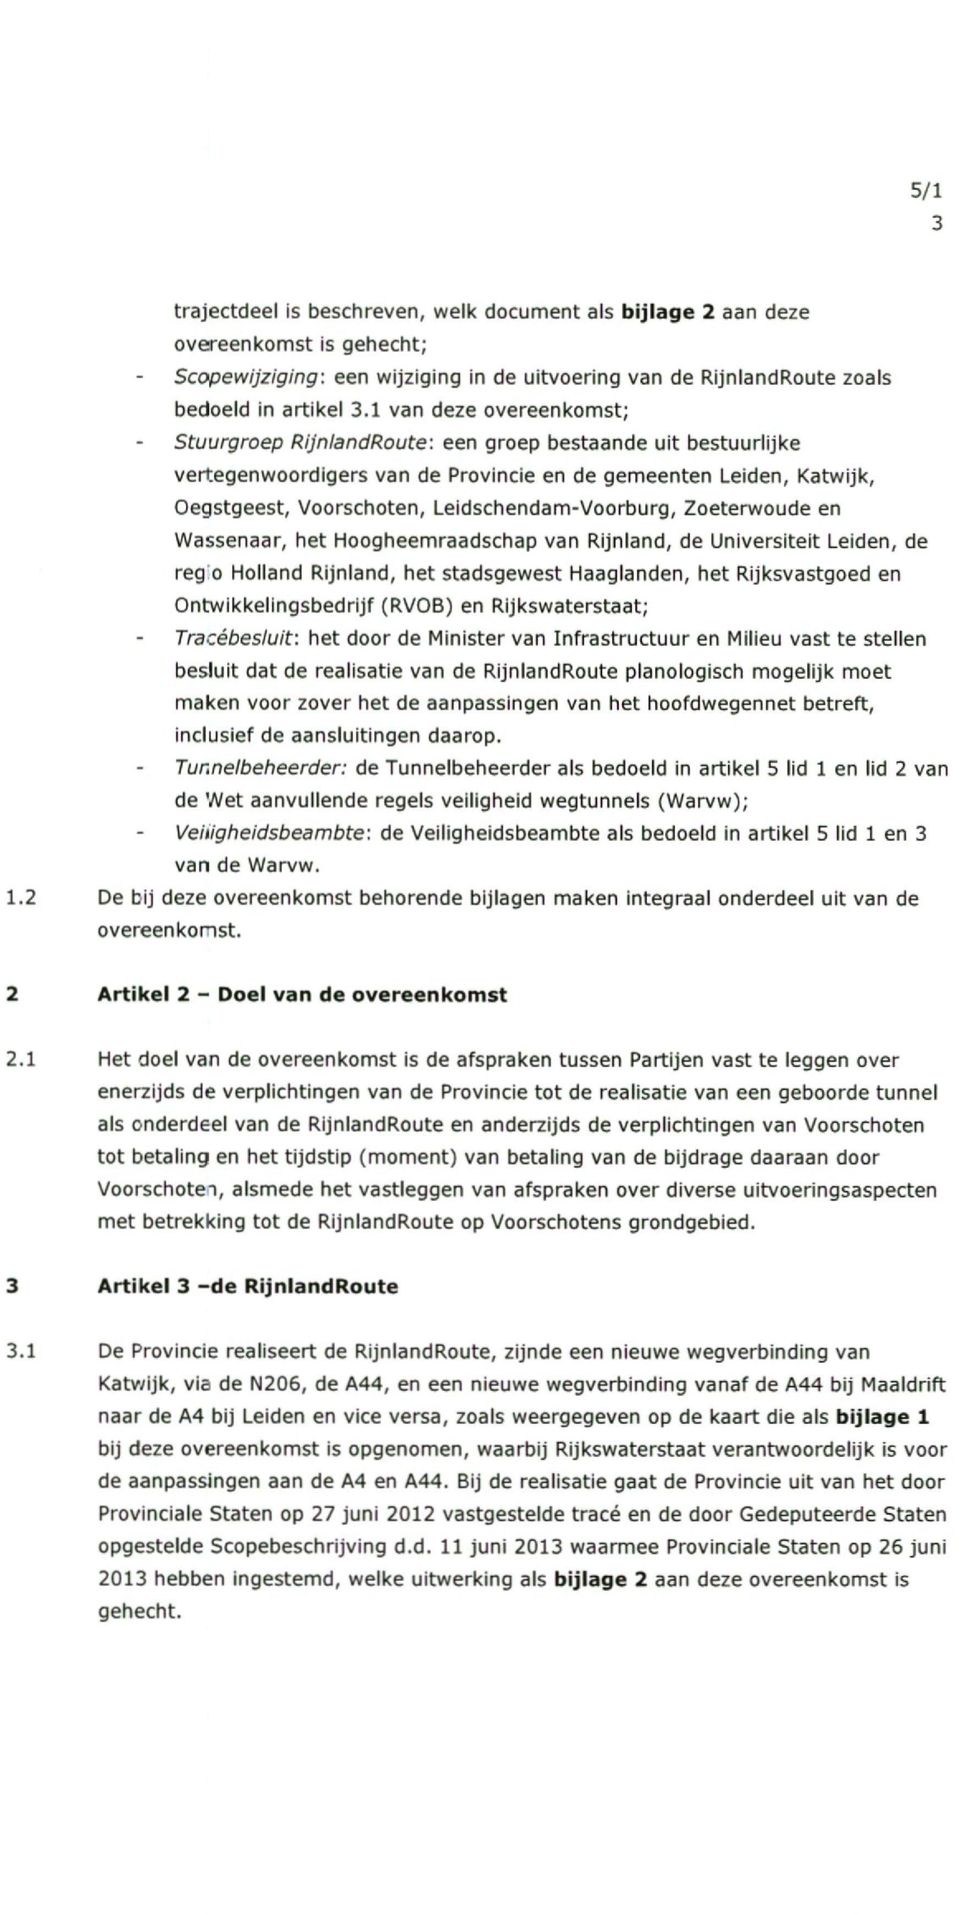 Leidschendam-Voorburg, Zoeterwoude en Wassenaar, het Hoogheemraadschap van Rijnland, de Universiteit Leiden, de reg 0 Holland Rijnland, het stadsgewest Haaglanden, het Rijksvastgoed en